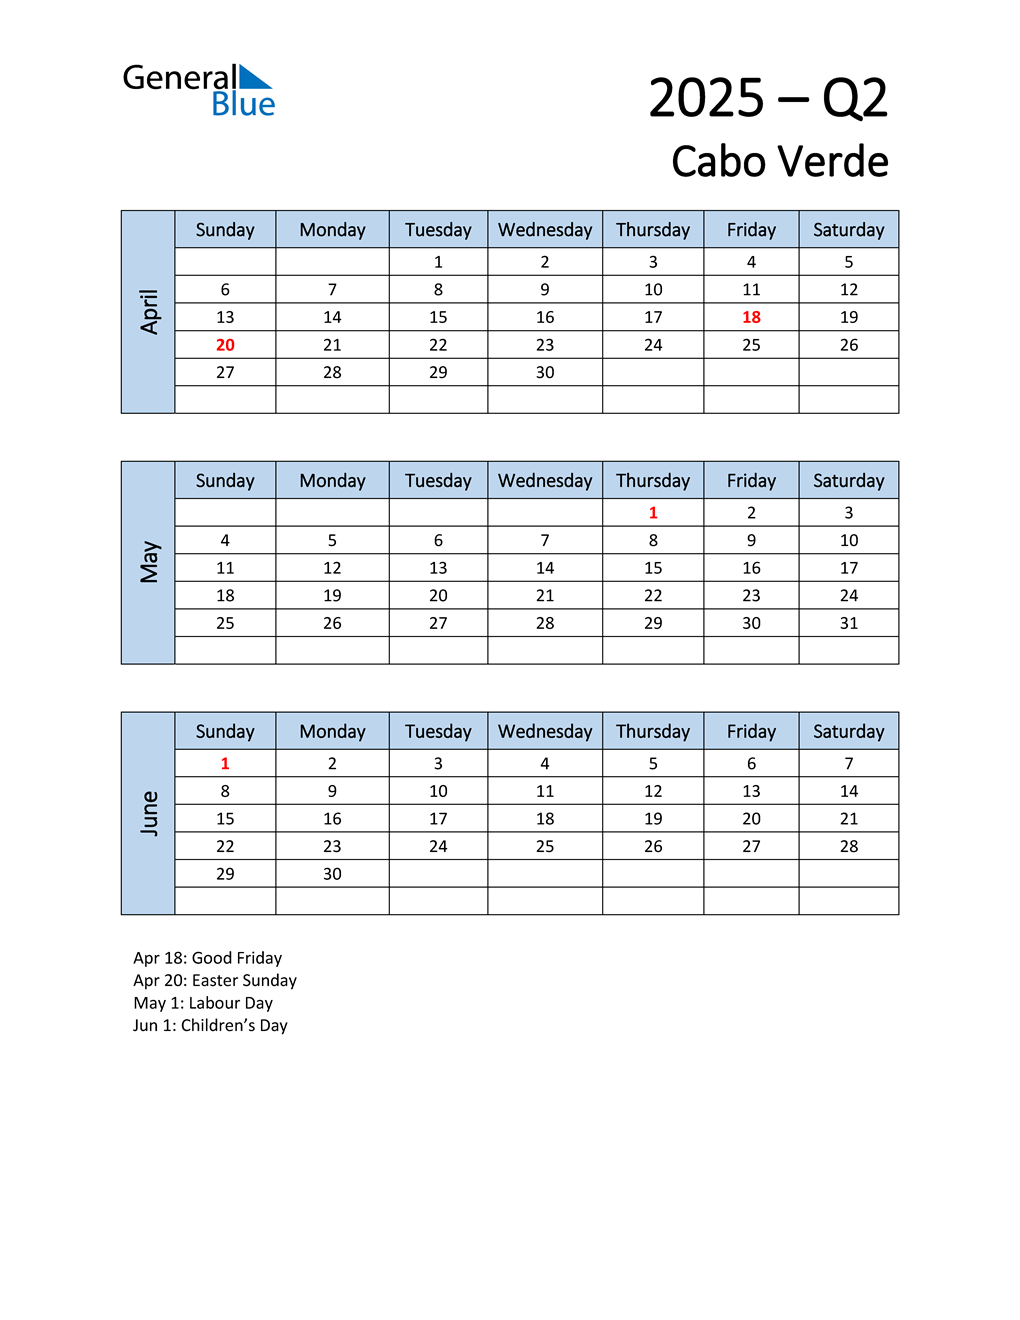  Free Q2 2025 Calendar for Cabo Verde